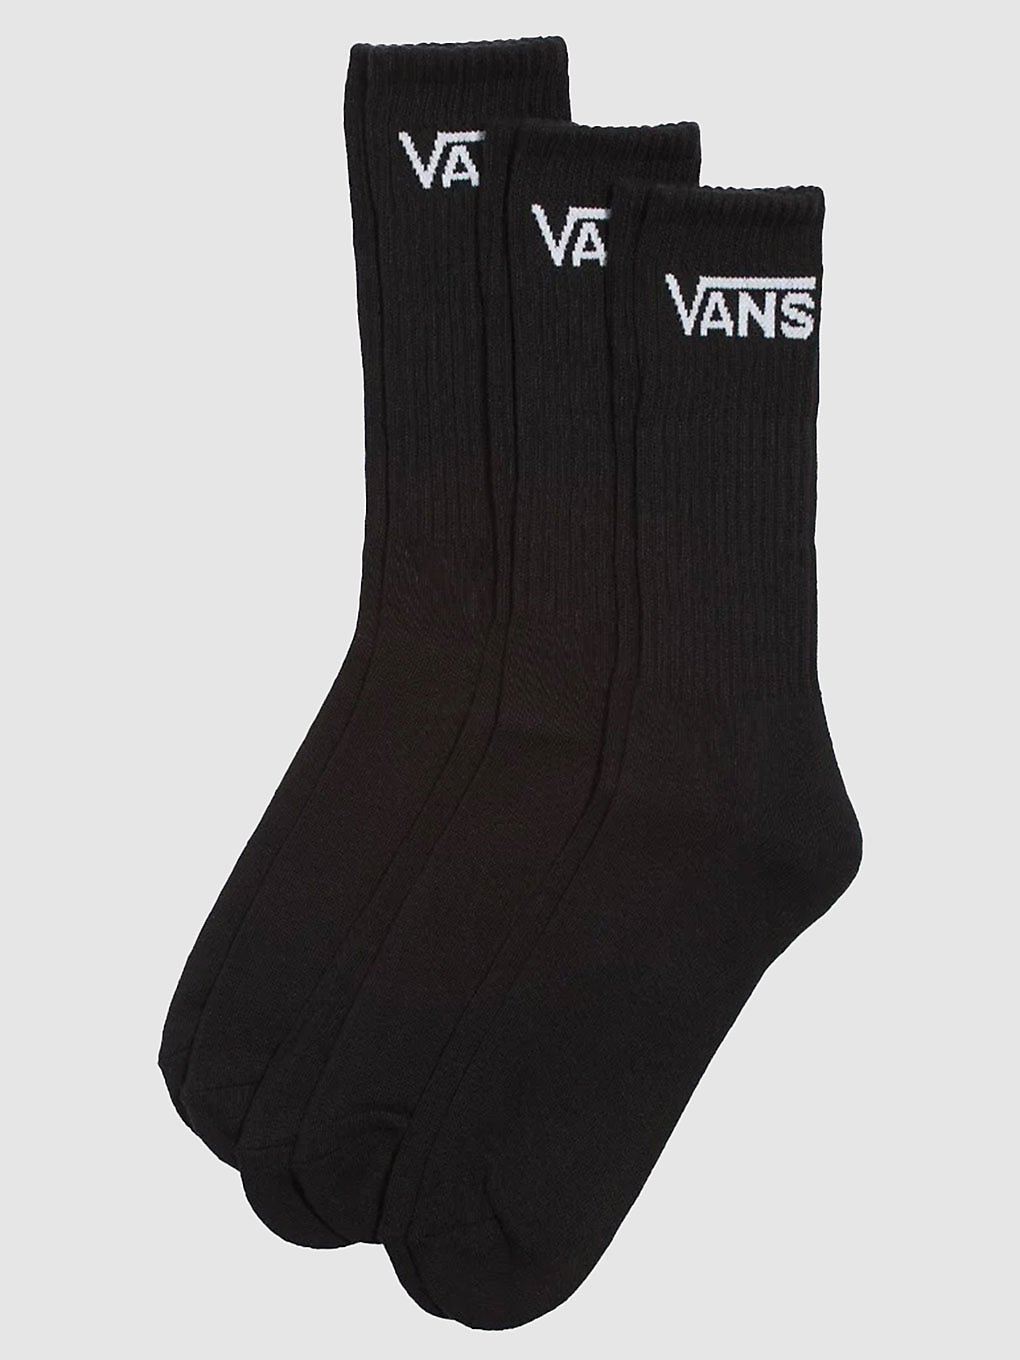 Vans Classic Crew 6.5-9 Socken rox black kaufen